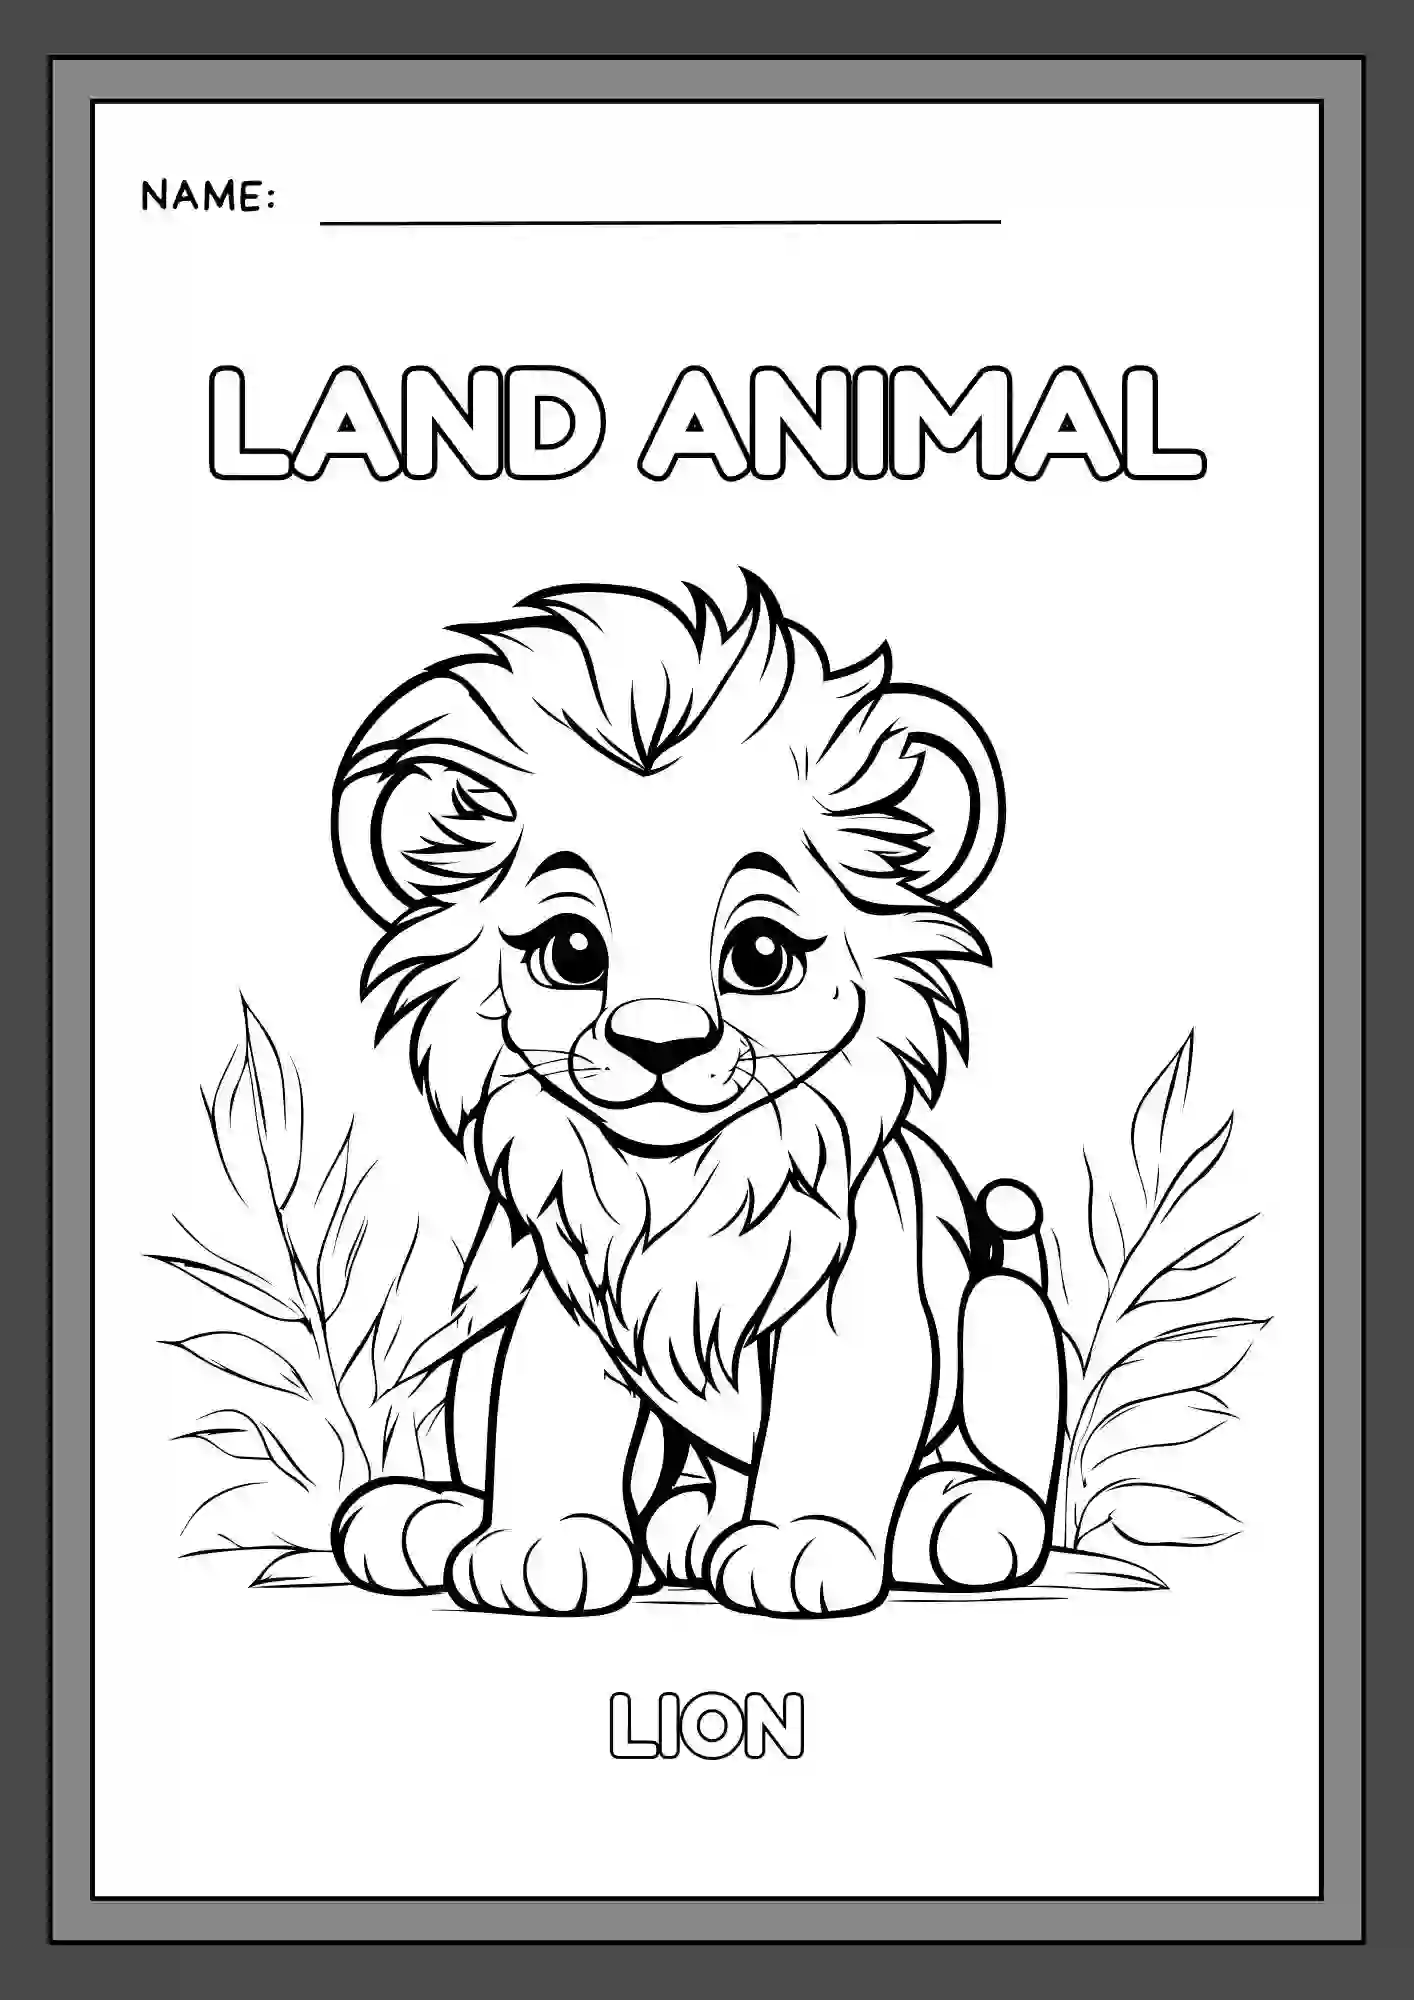 Land Animals Coloring Worksheets For Kindergarten Lkg & Ukg (lion)